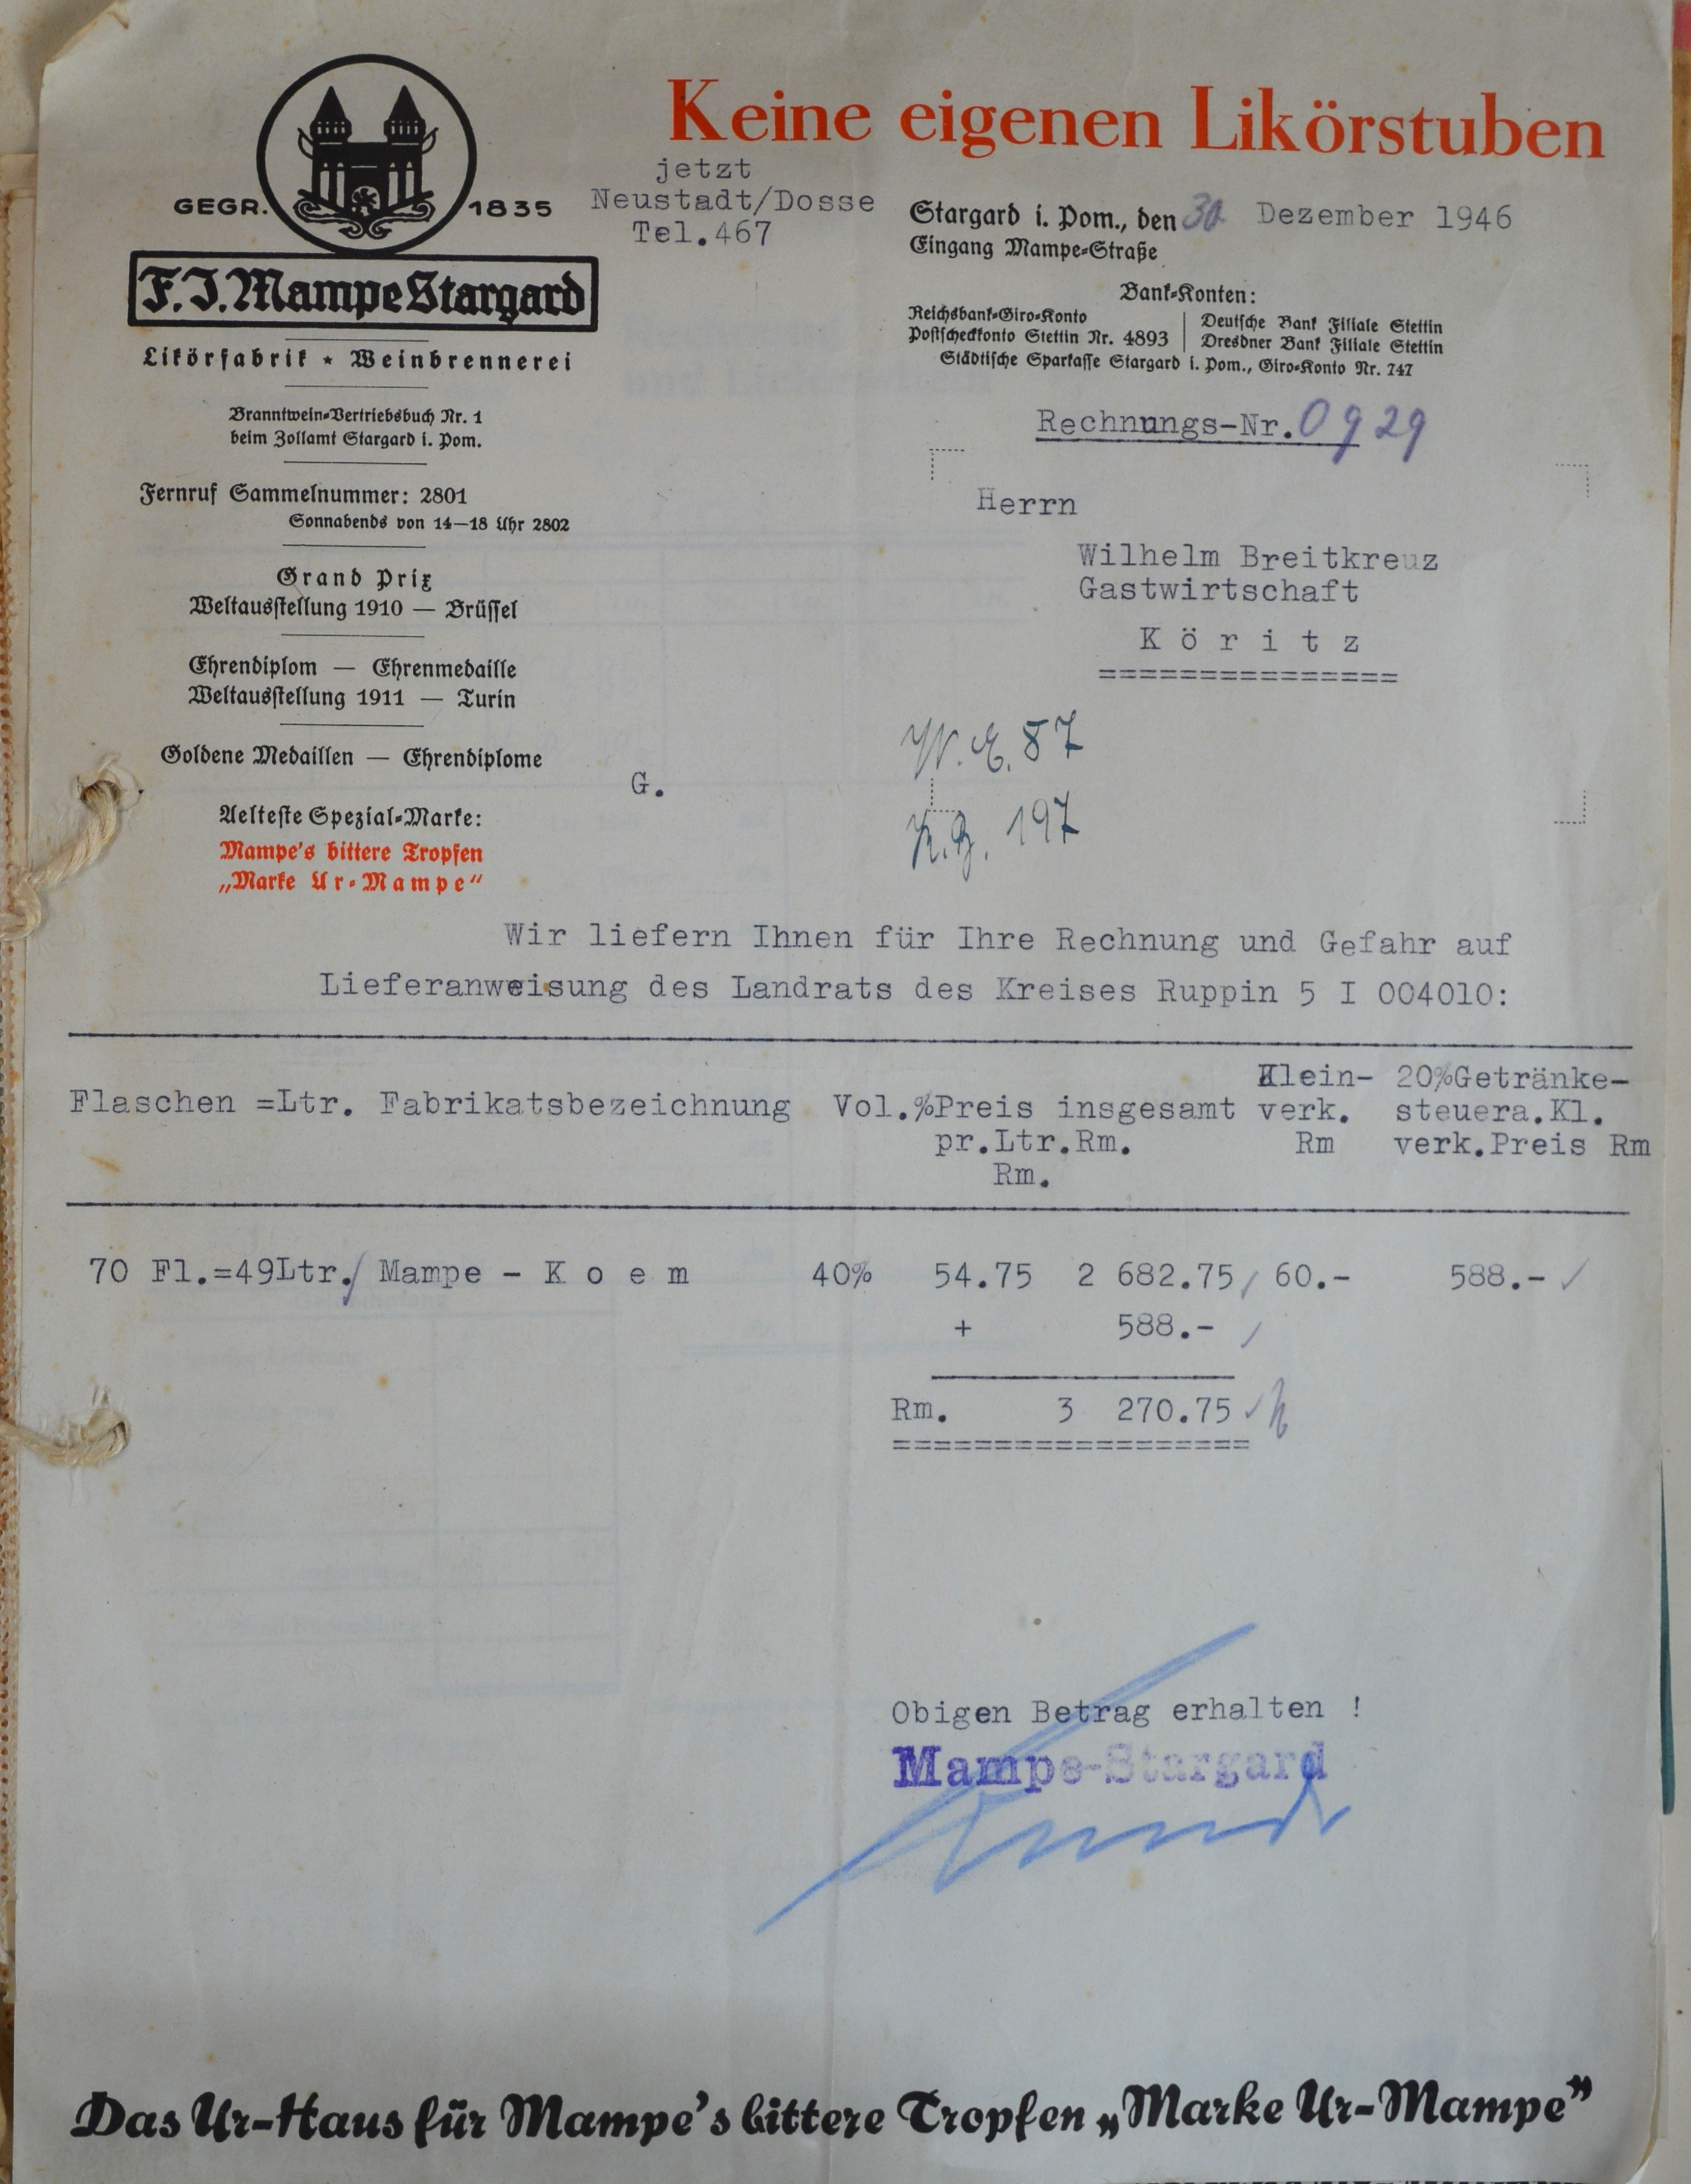 Rechnung von F. J. Mampe Stargard aus Neustadt (Dosse) für Wilhelm Breitkreuz (DDR Geschichtsmuseum im Dokumentationszentrum Perleberg CC BY-SA)